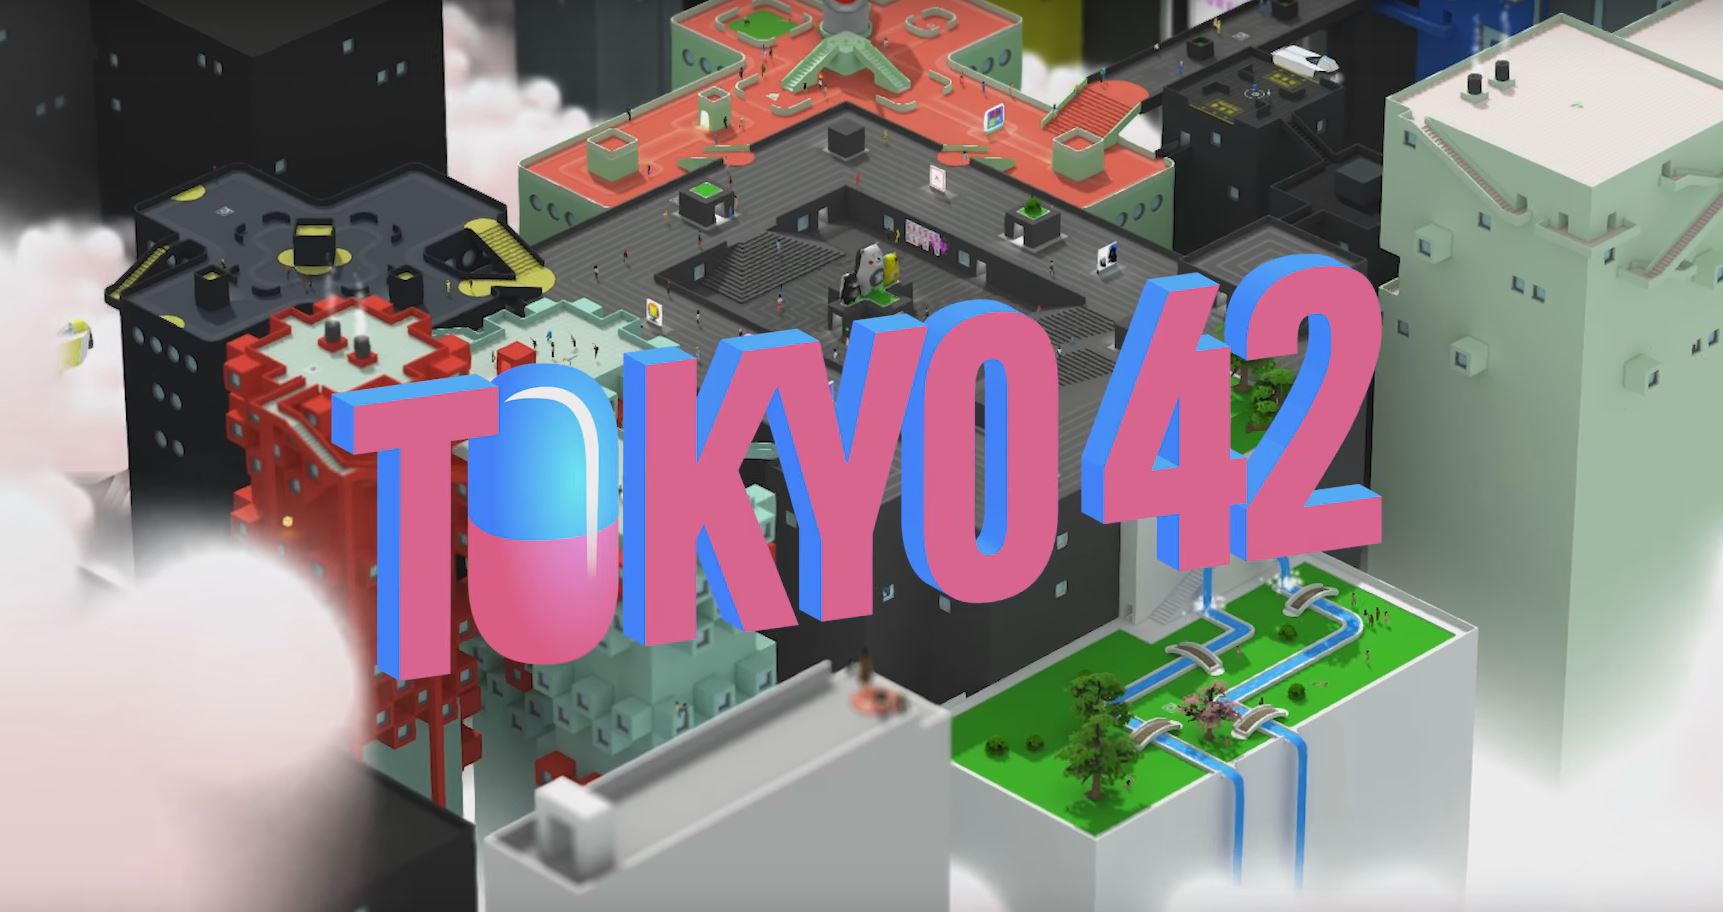 Tokyo 42 inspirado por Grand Theft Auto será lanzado el Mayo 31 en PC y Xbox One